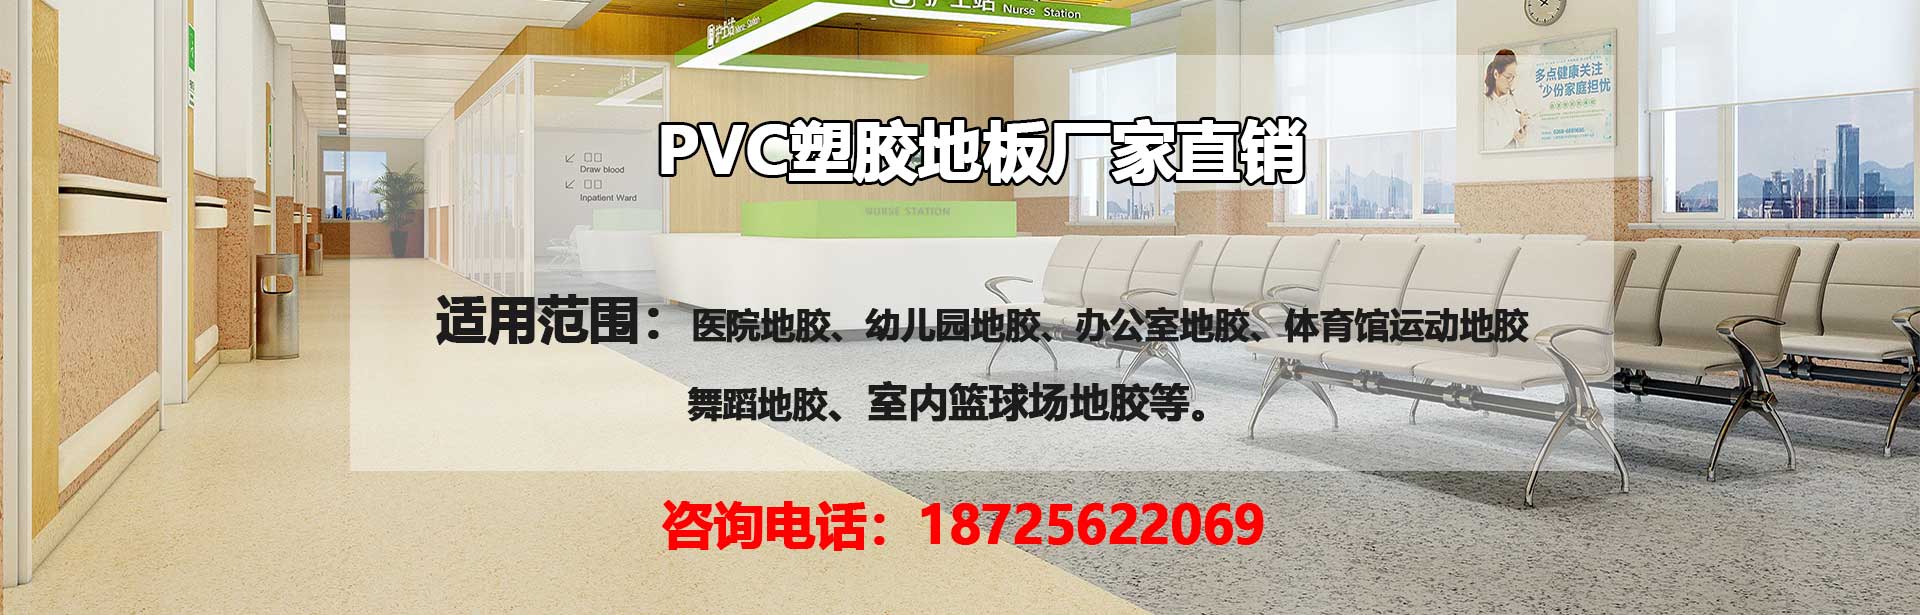 荆州PVC塑胶地板